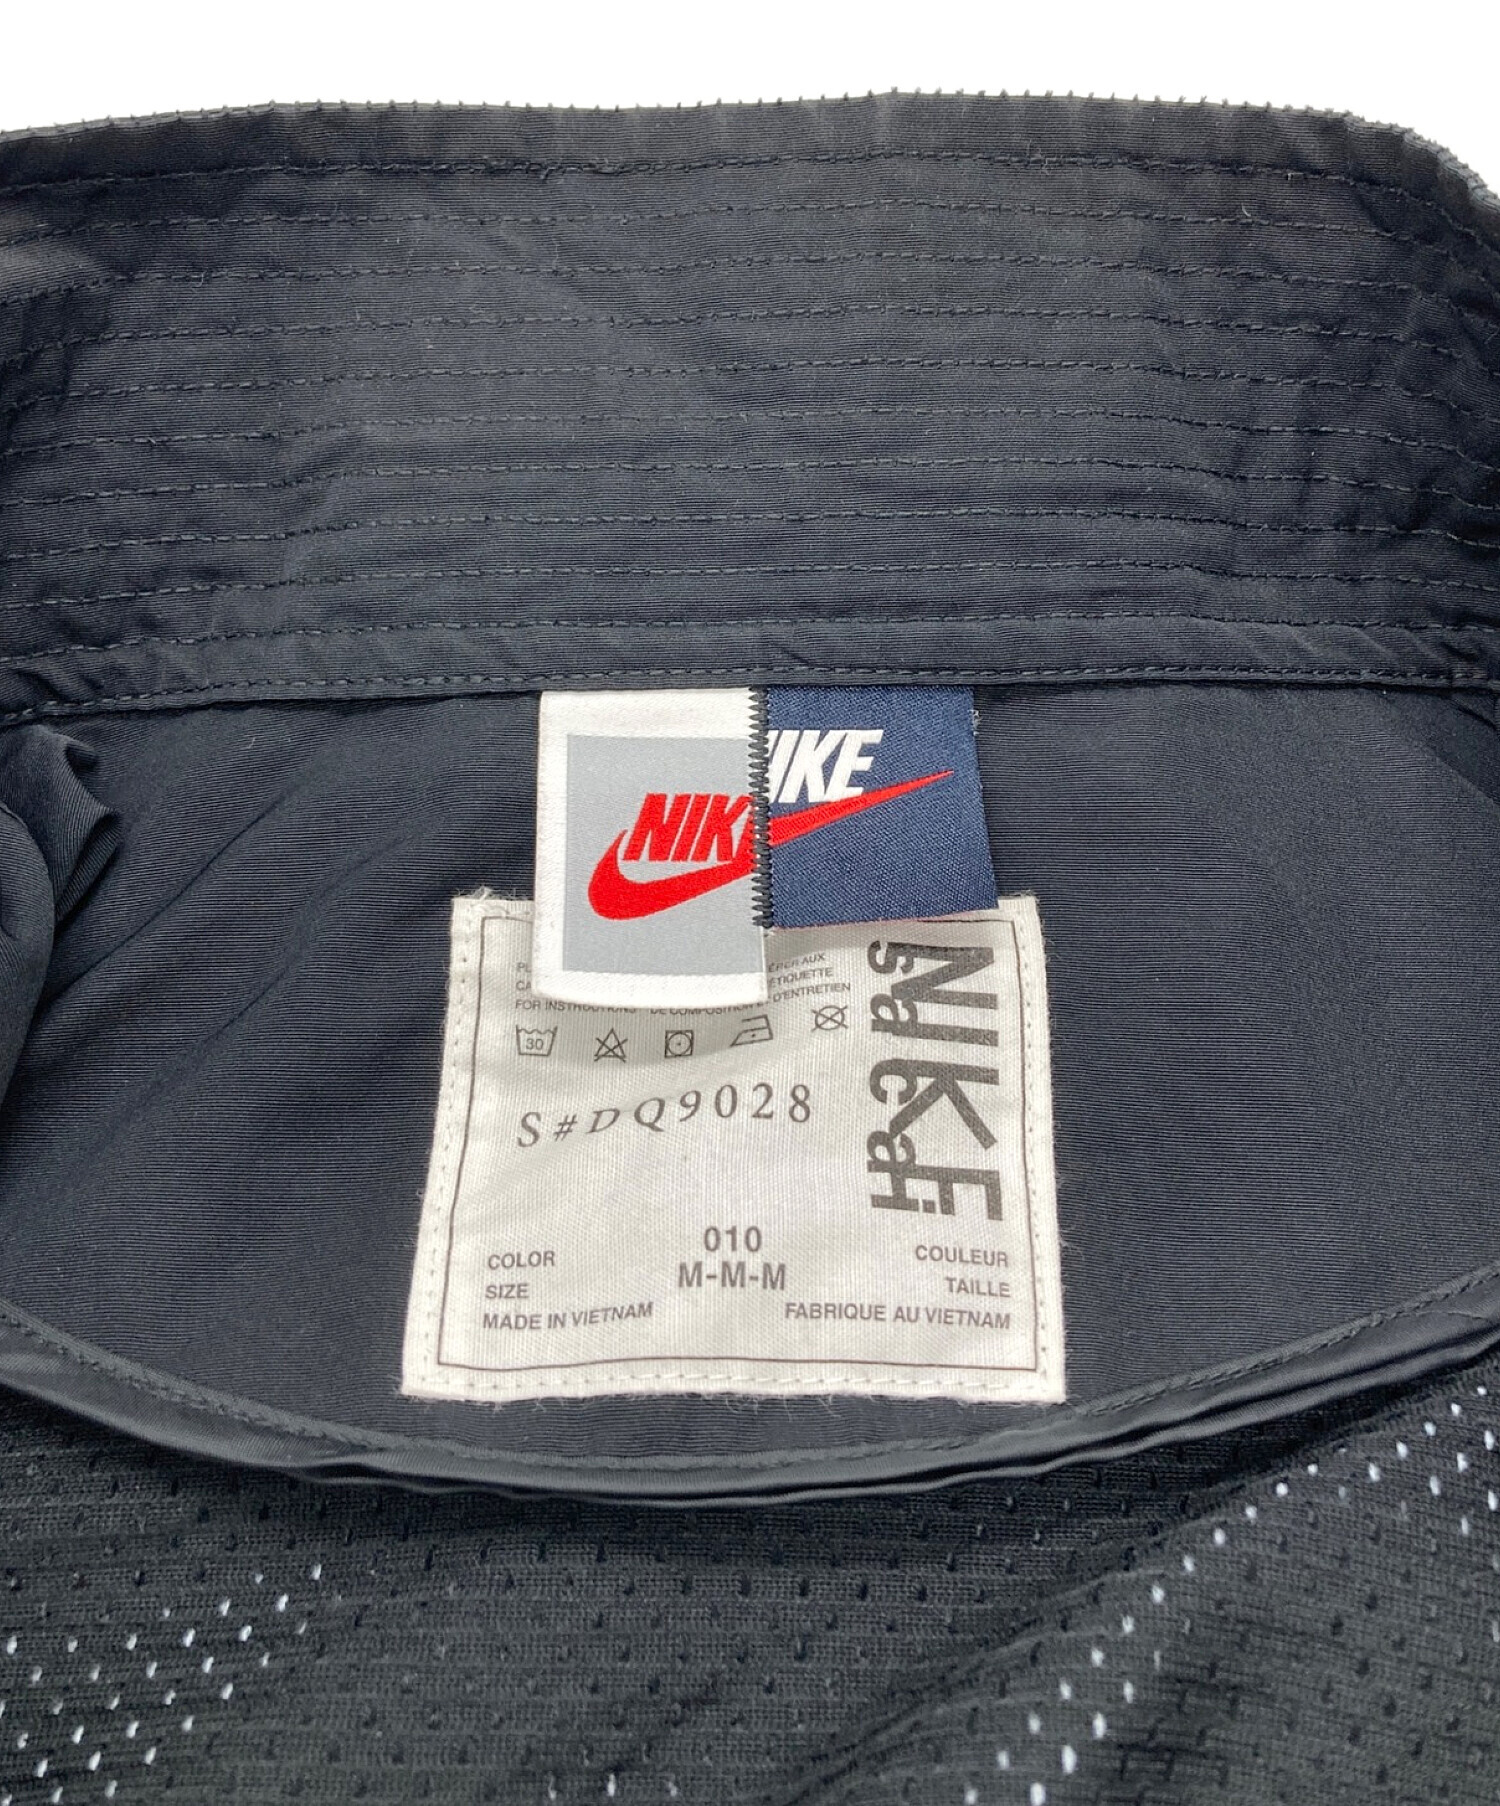 NIKE (ナイキ) sacai (サカイ) コラボトレンチジャケット Trench Jacket ブラック サイズ:M